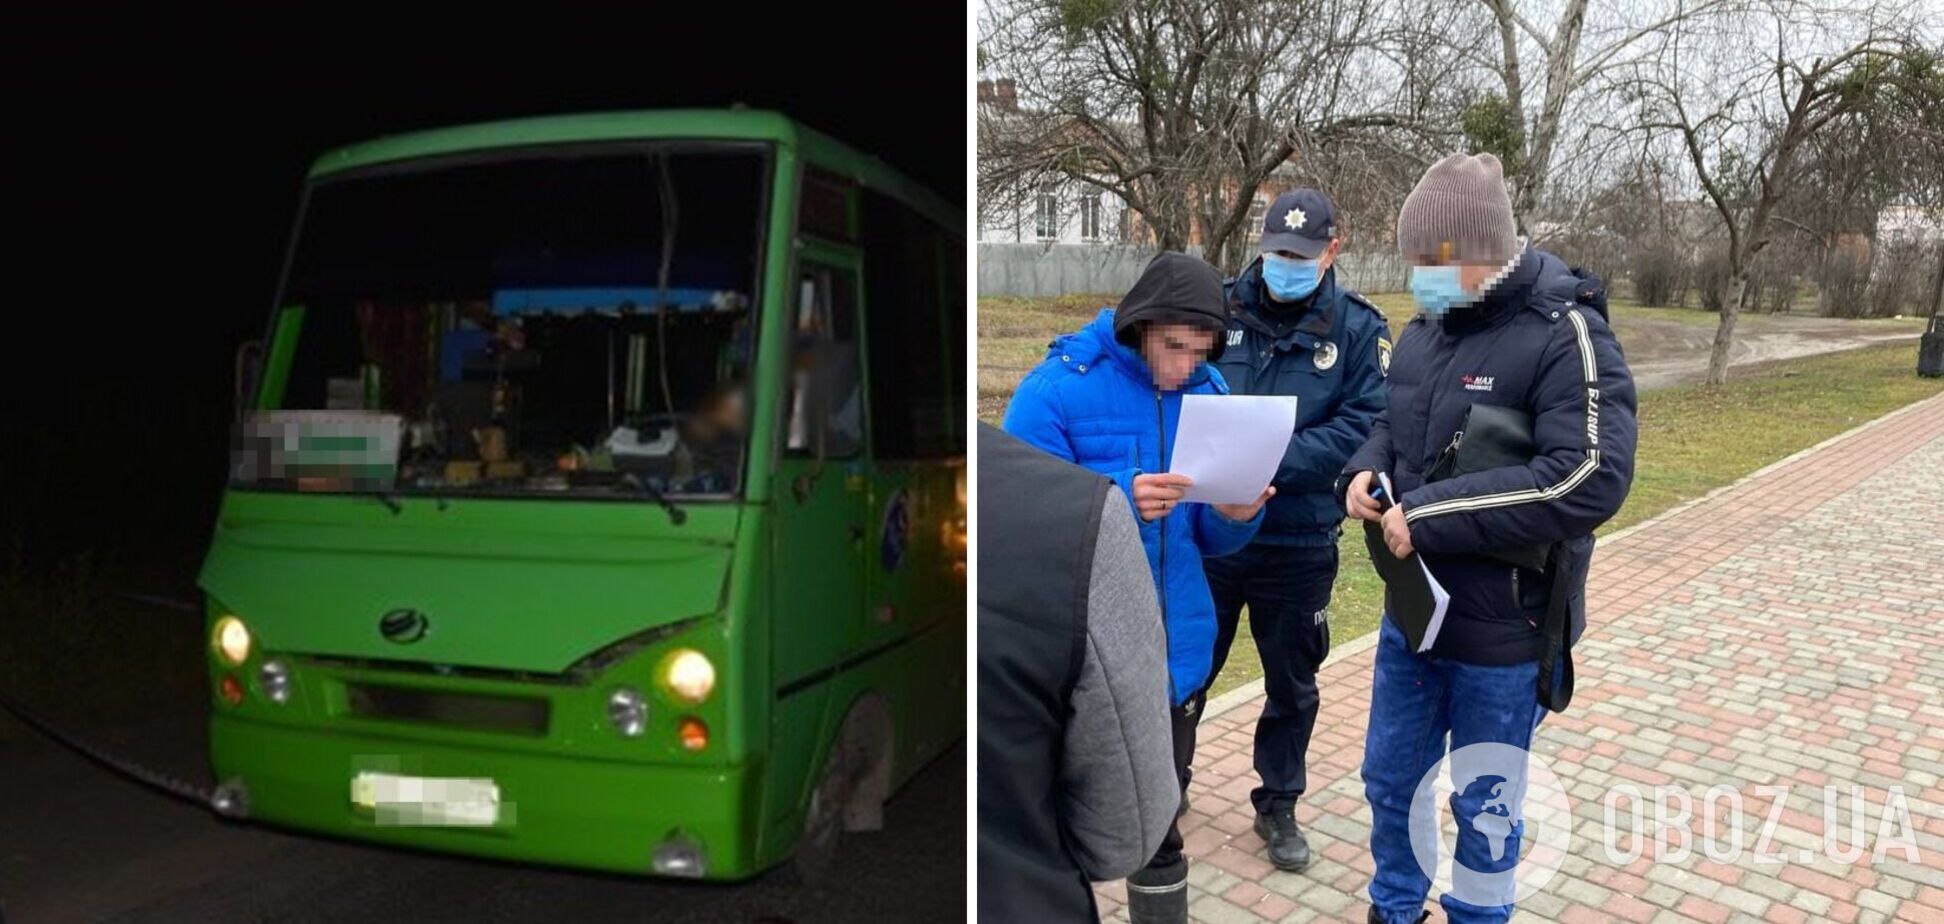 На Харьковщине задержали подозреваемого в убийстве водителя автобуса: он 4 года скрывался от полиции. Фото 18+